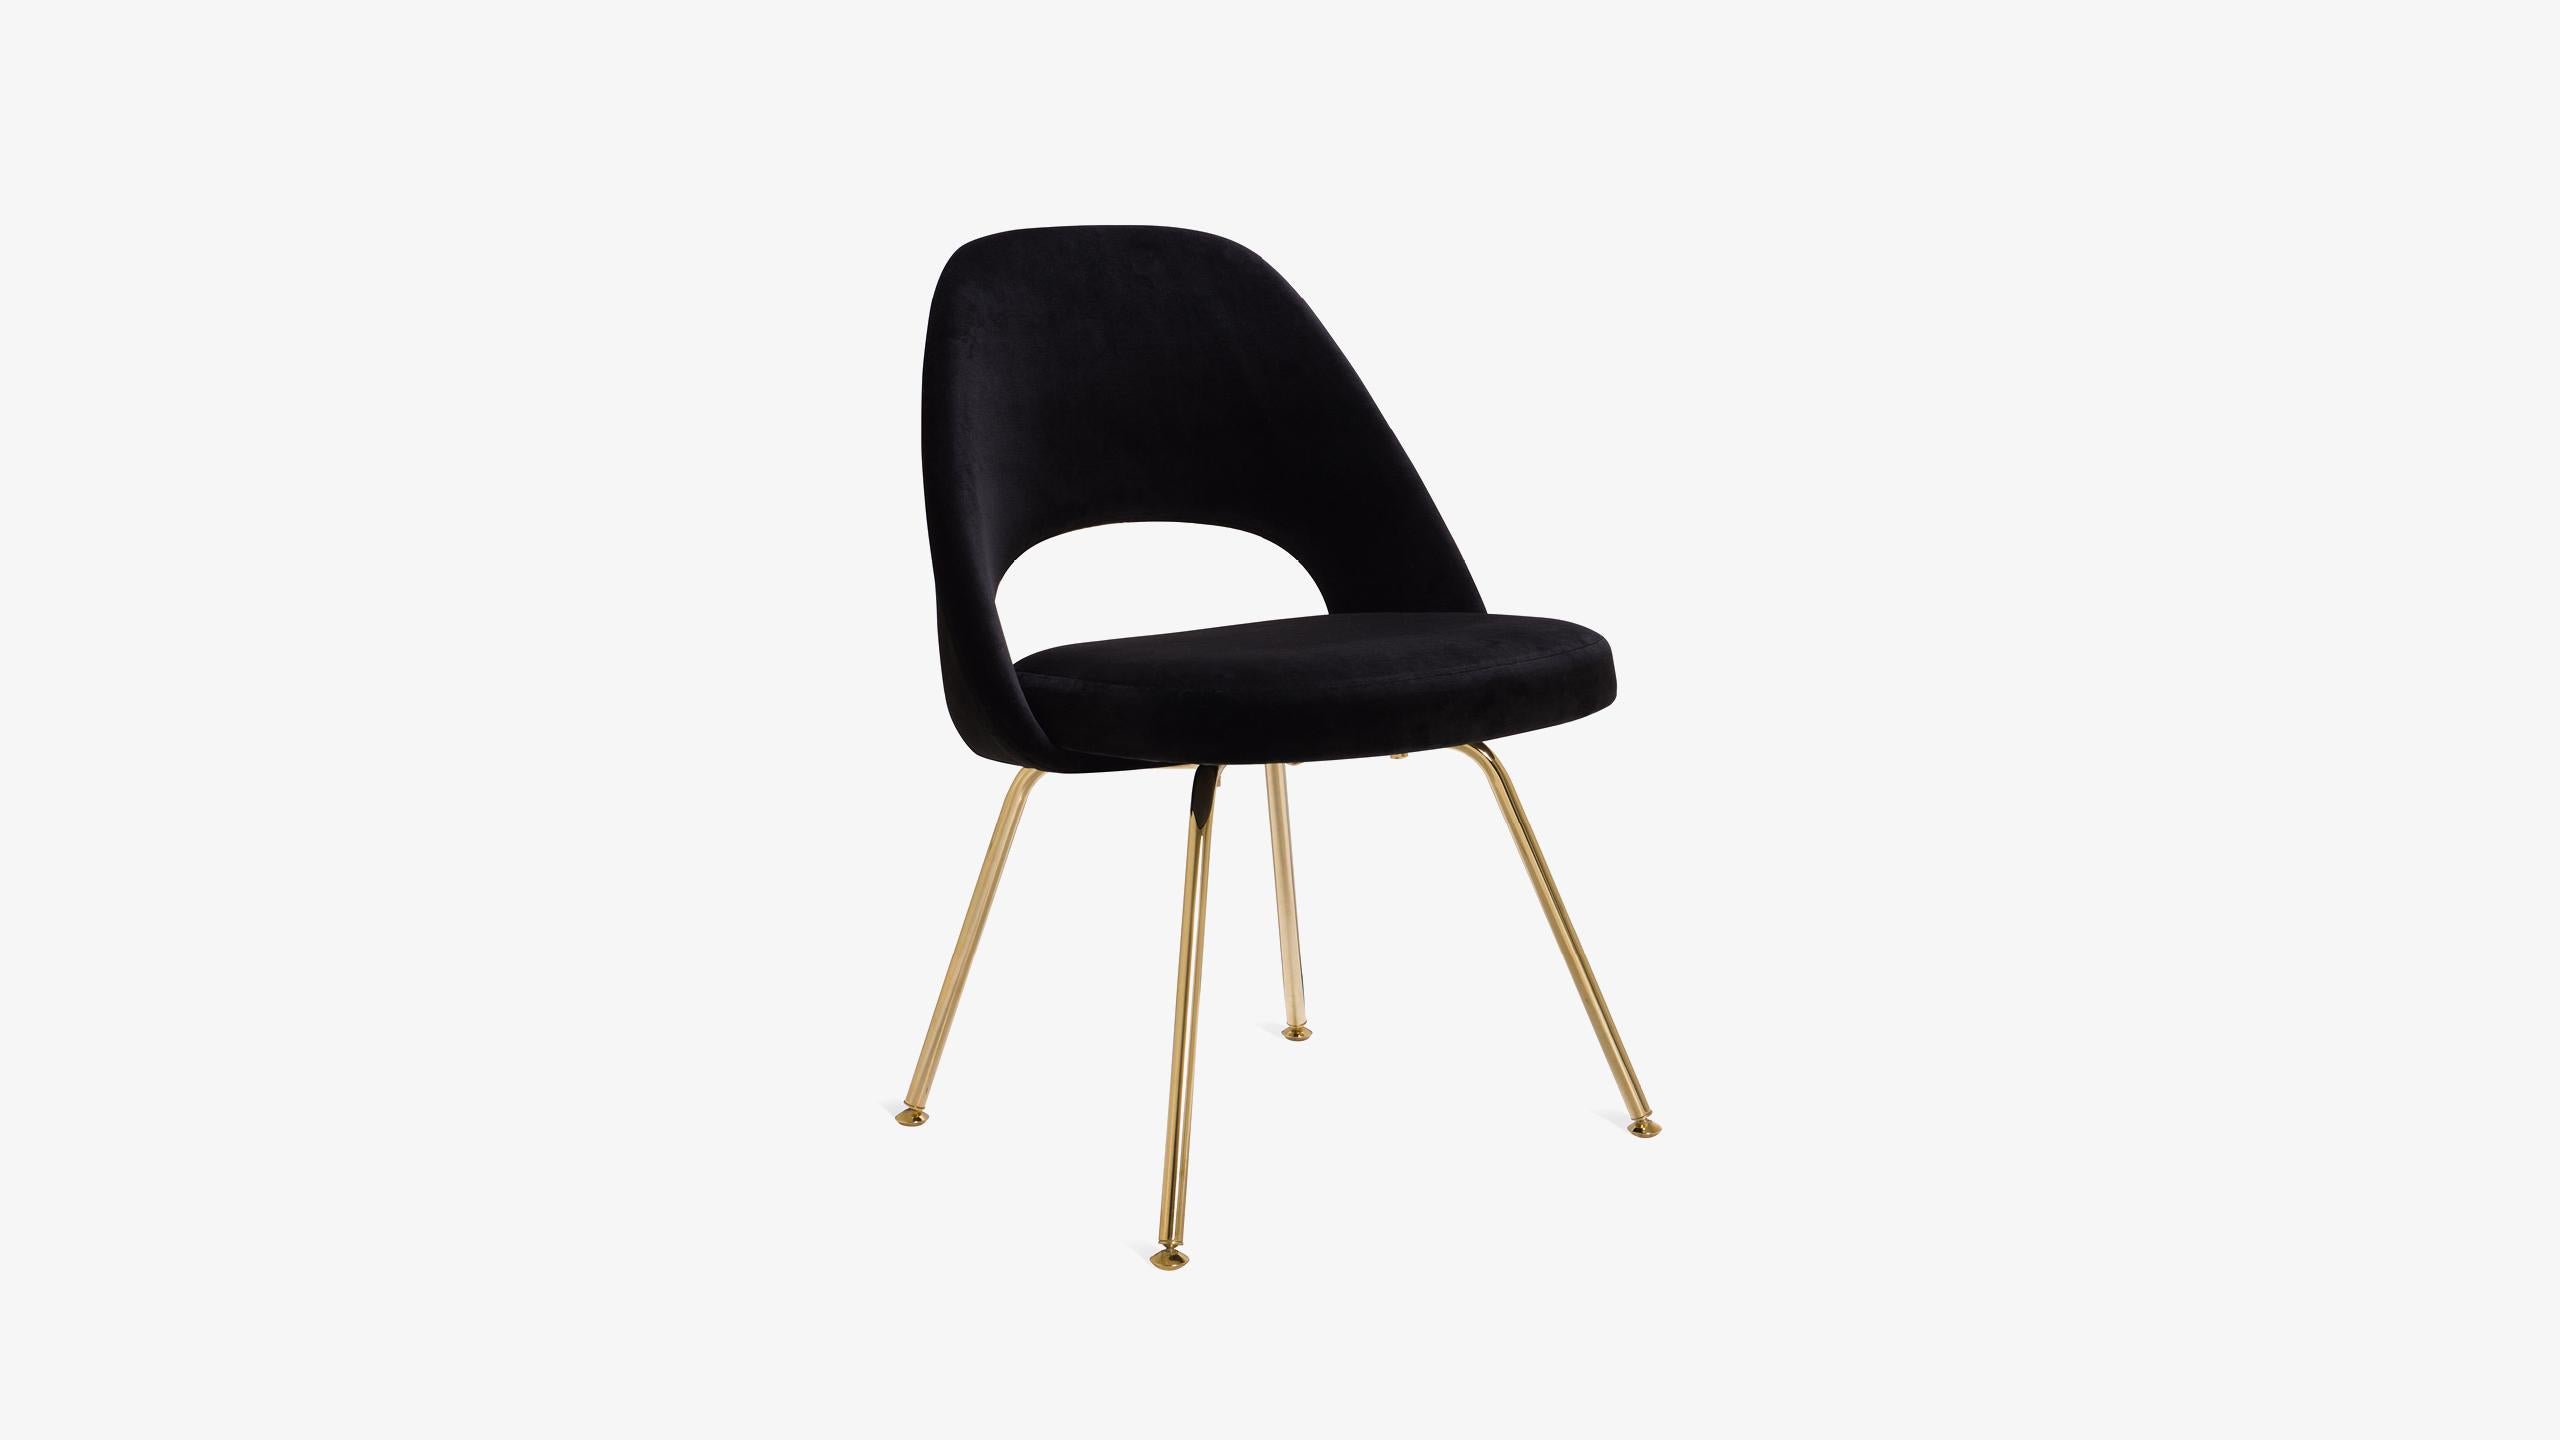 La nouvelle génération des célèbres fauteuils de direction d'Eero Saarinen est arrivée. Il s'agit de fauteuils de direction Eero Saarinen for Knoll 100 % authentiques, entièrement restaurés avec une touche d'or supplémentaire.

Depuis des années,